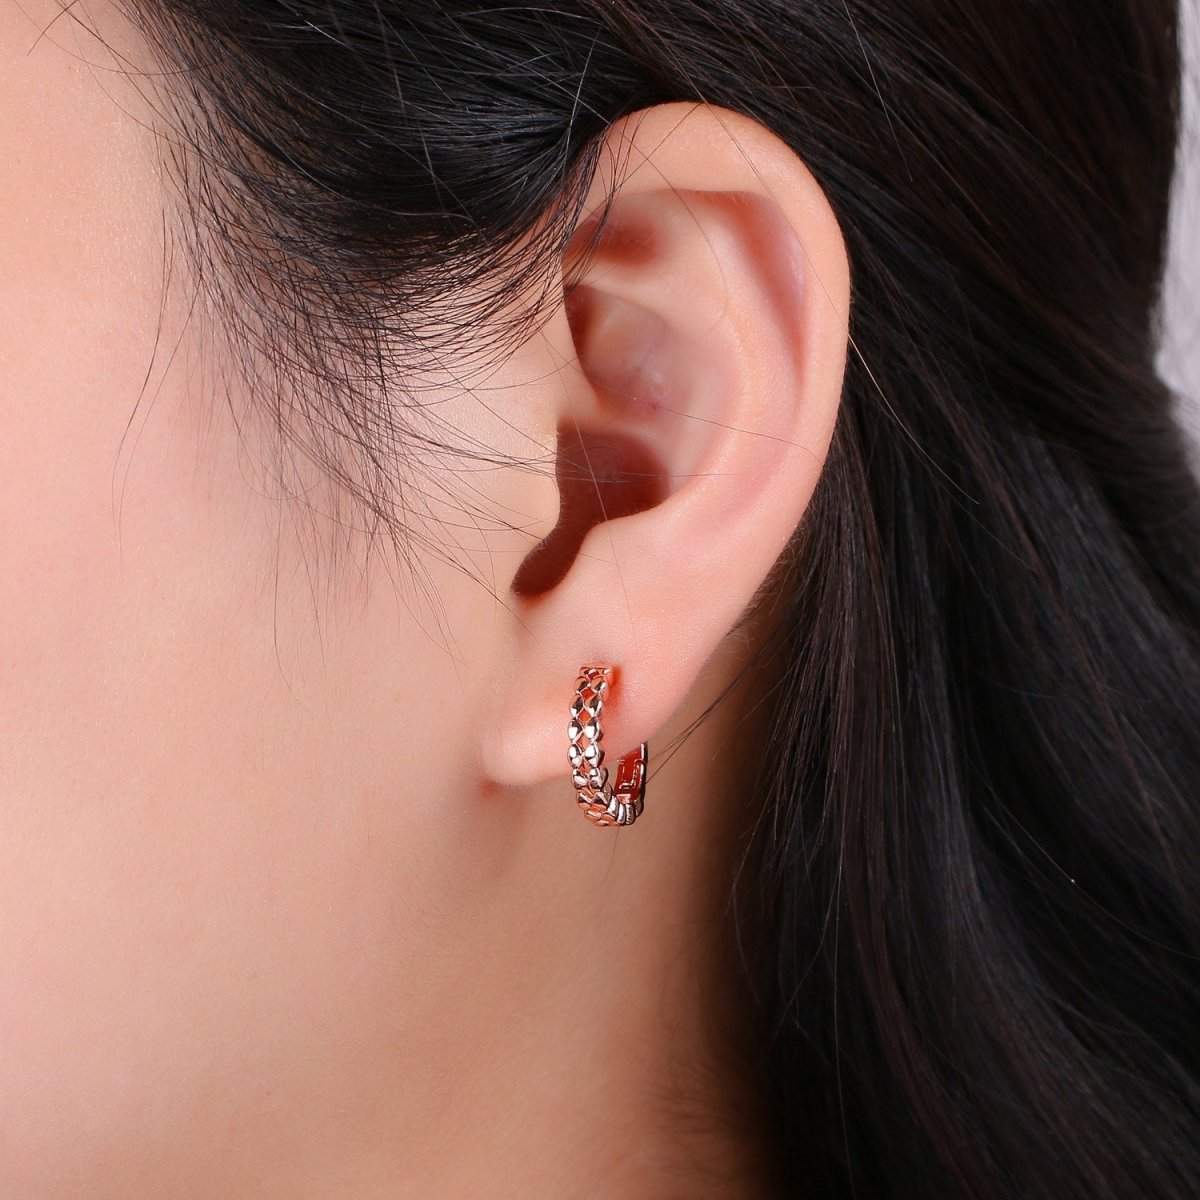 14k Gold Filled Earrings, Huggie Earring, Tiny Earrings, Tiny Diamond Earrings, DIY Earrings, Everyday Wear Earrings, Rosegold Earring K-665 - K-667 - DLUXCA